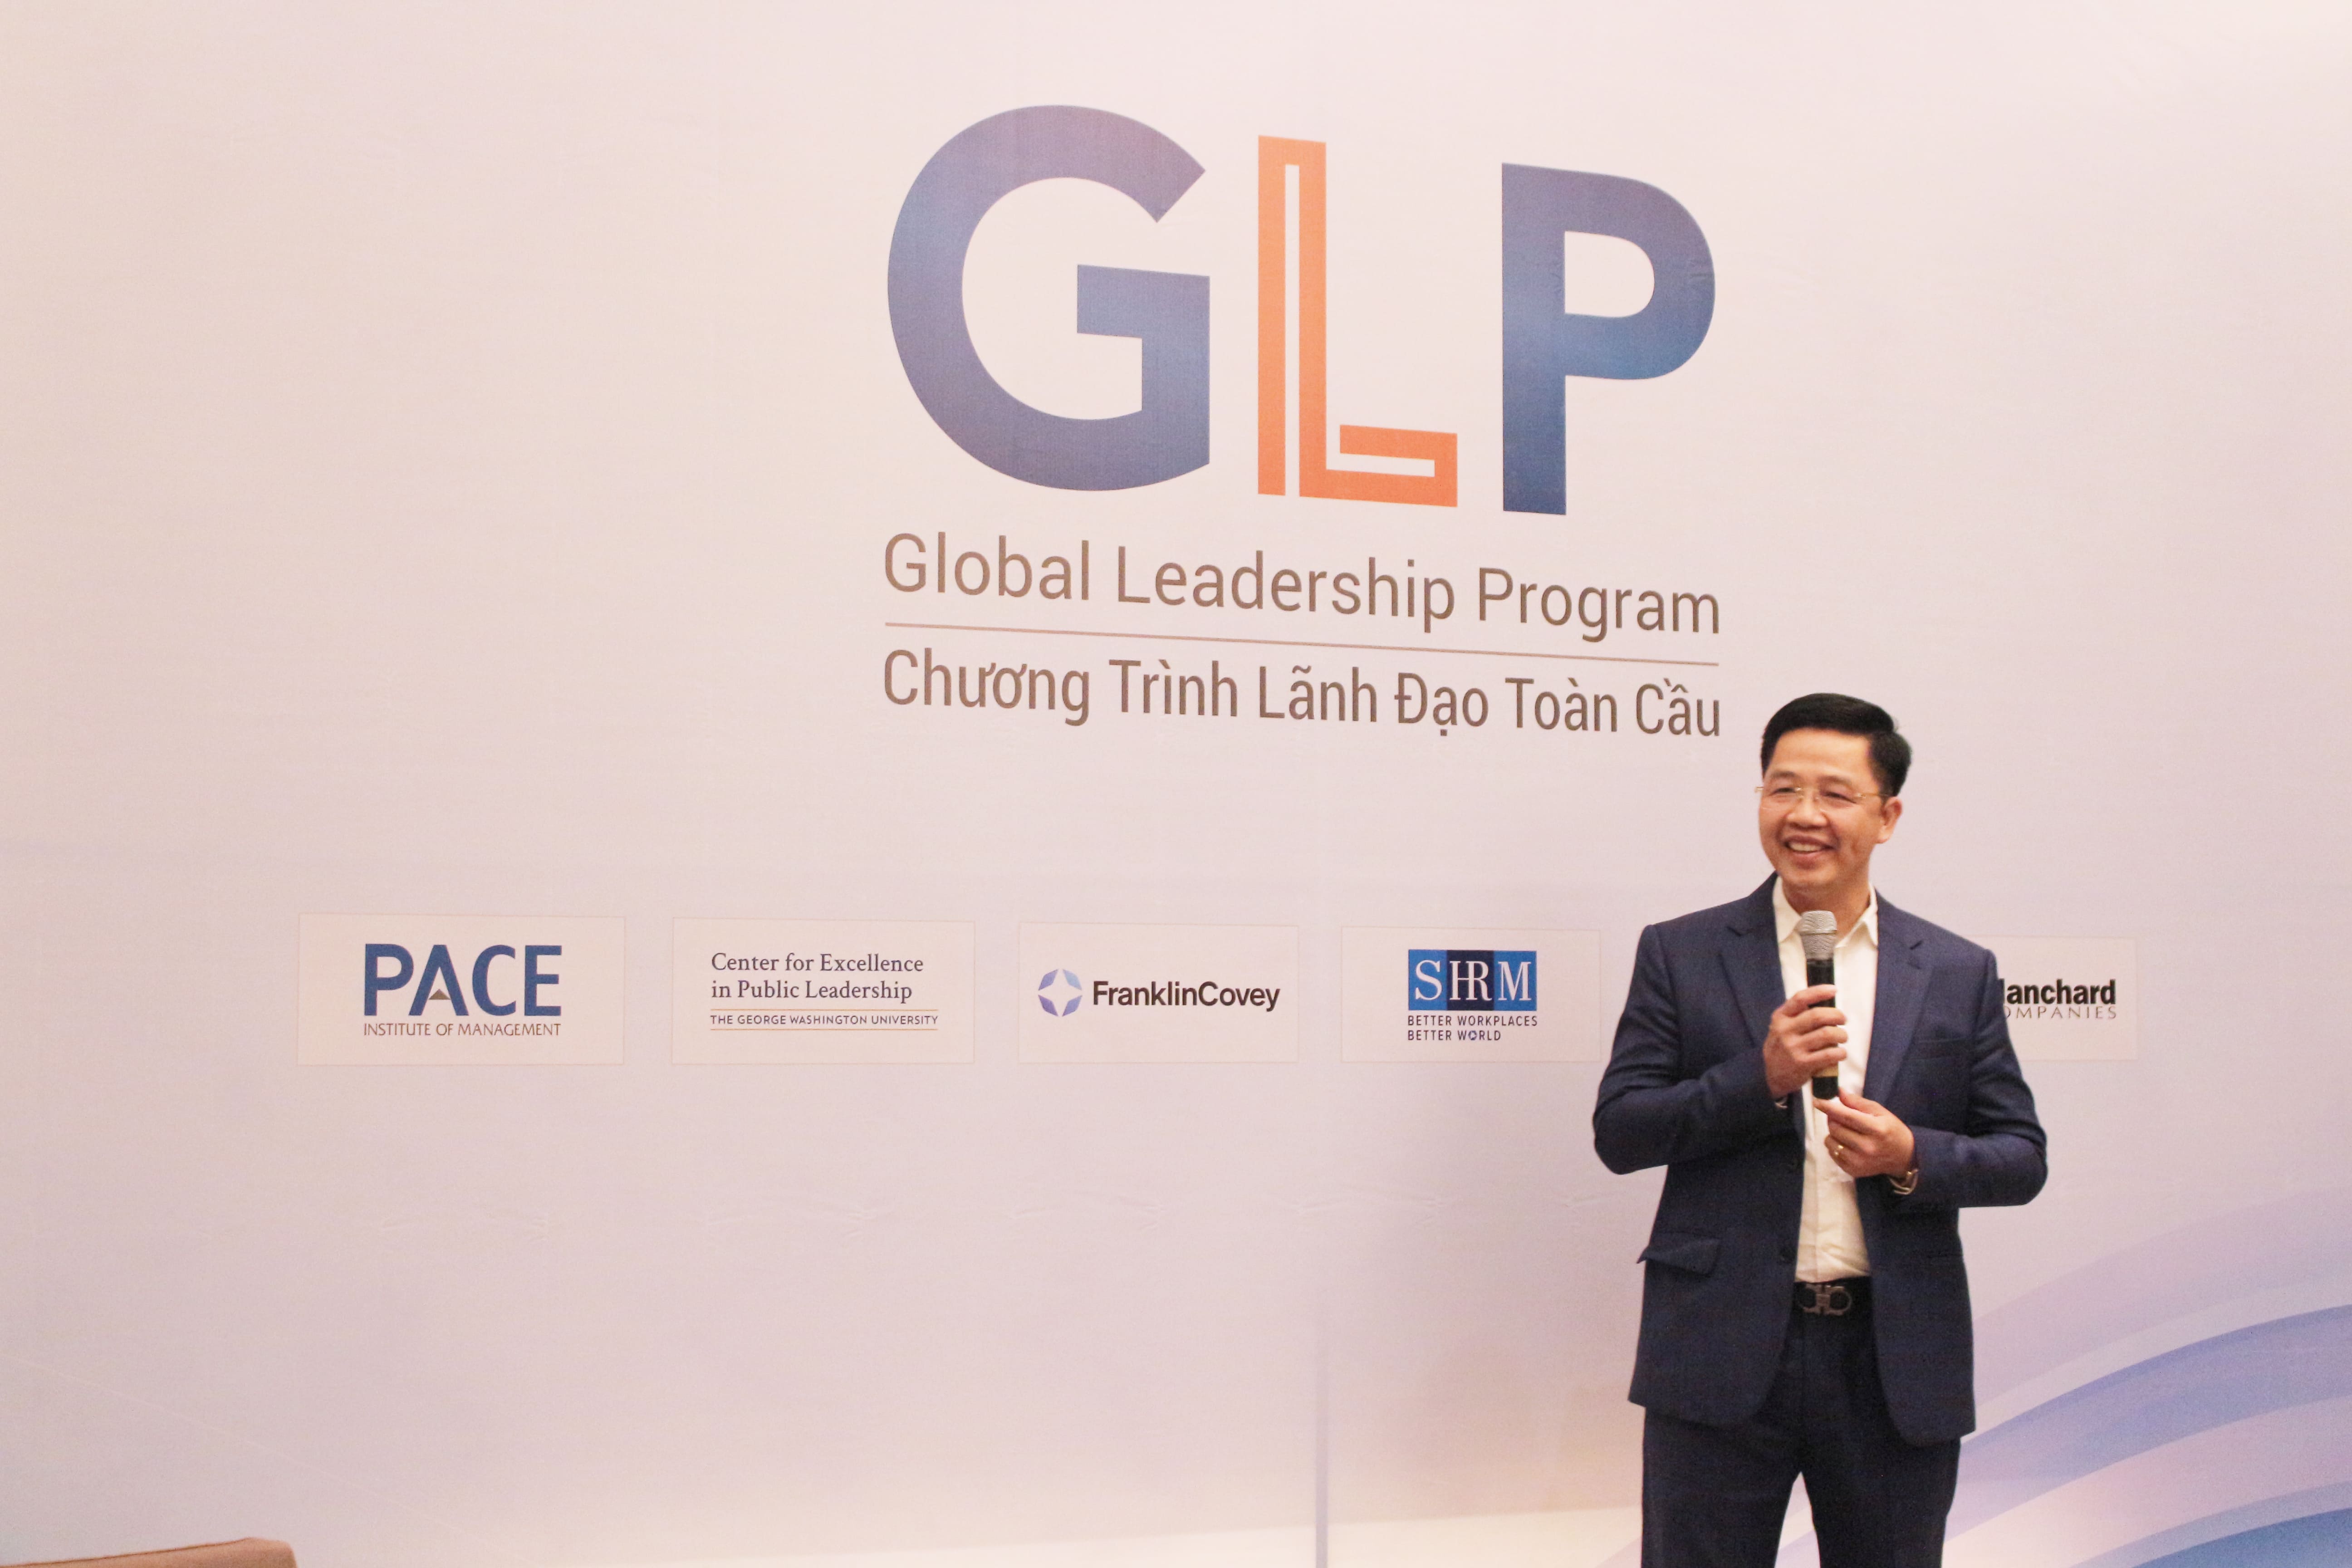 Ông Phạm Văn Hùng: “GLP giúp tôi thay đổi suy nghĩ và hành động”